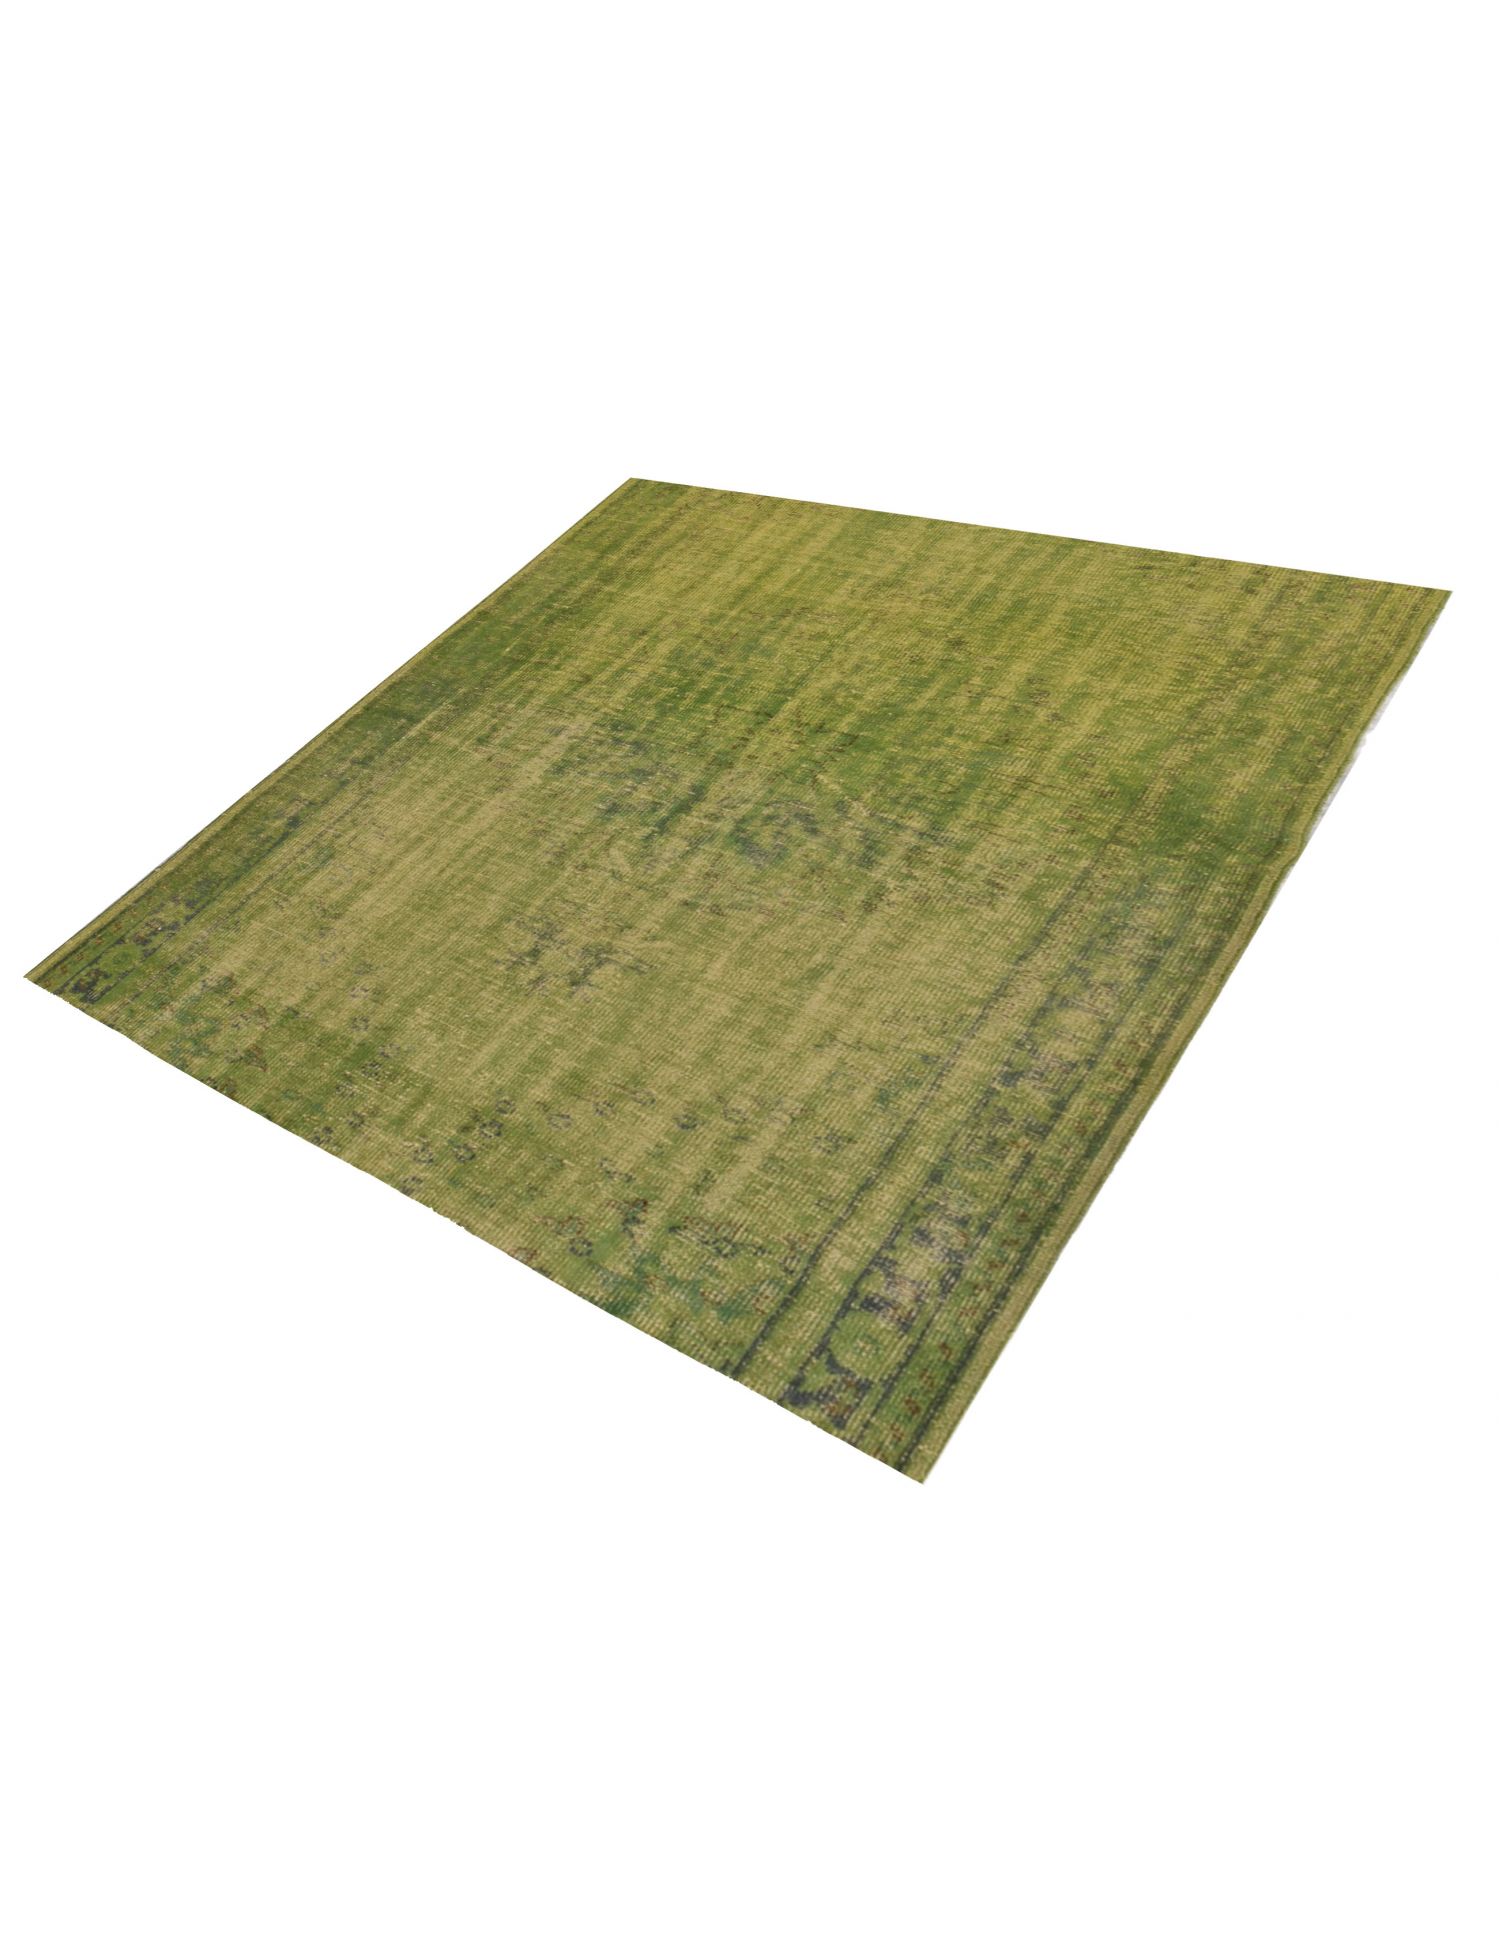 Vintage Teppich  grün <br/>170 x 170 cm